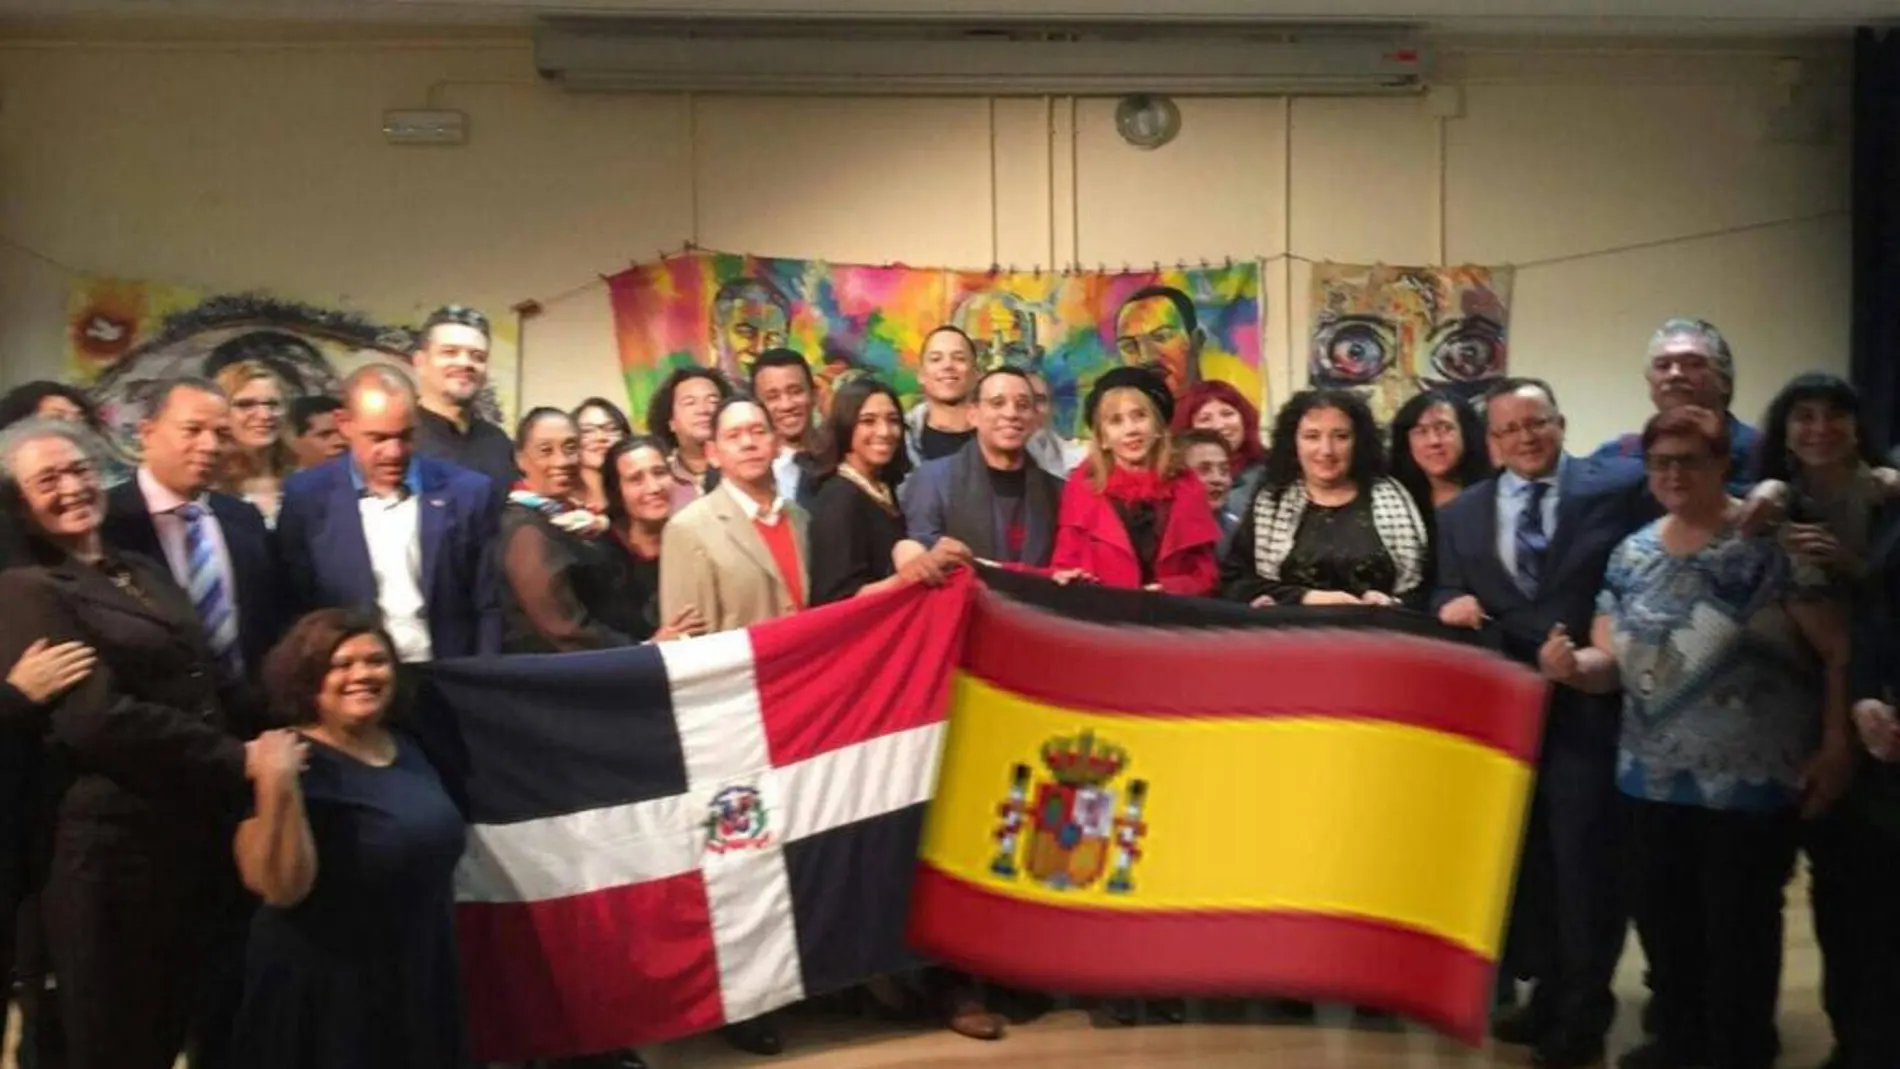 Genaro Roble (Yiyoh) y Sarah Merán, autores del proyecto «Lienzos Sueltos por La Paz» posando en una foto de familia, mostrando las banderas de R. Dominicana y de España